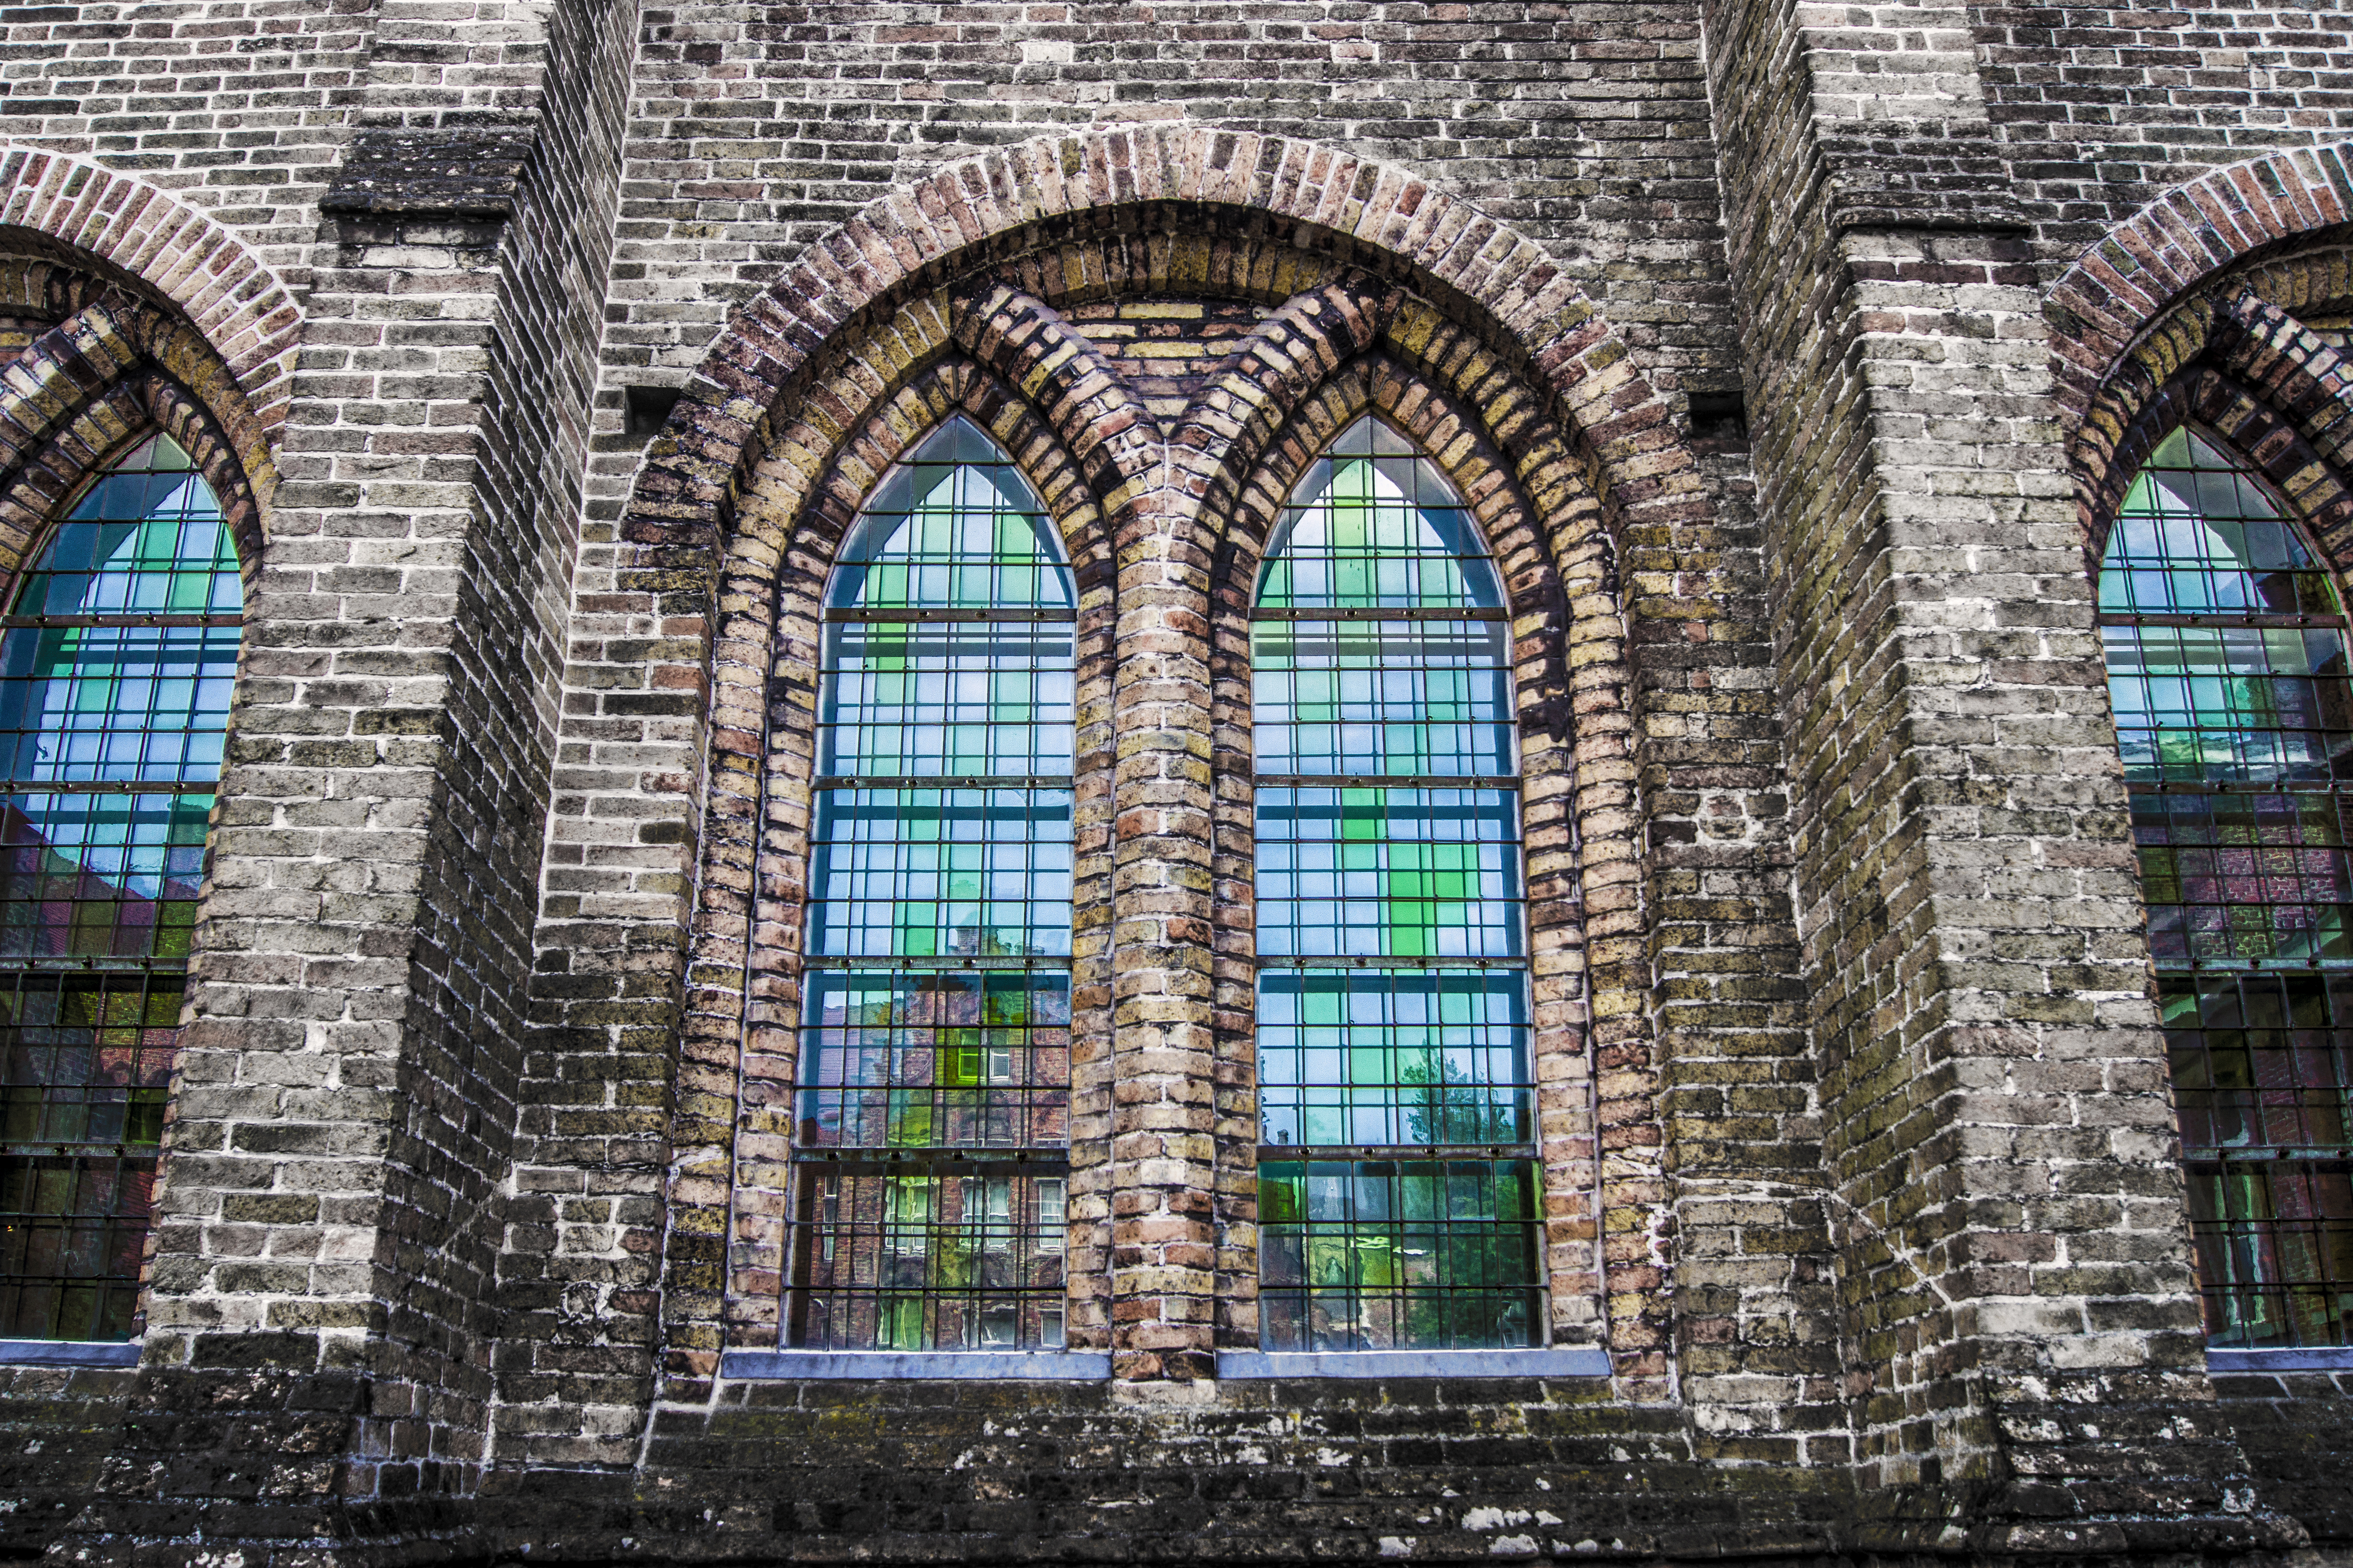 Brugge Ramen Glas-in-Lood